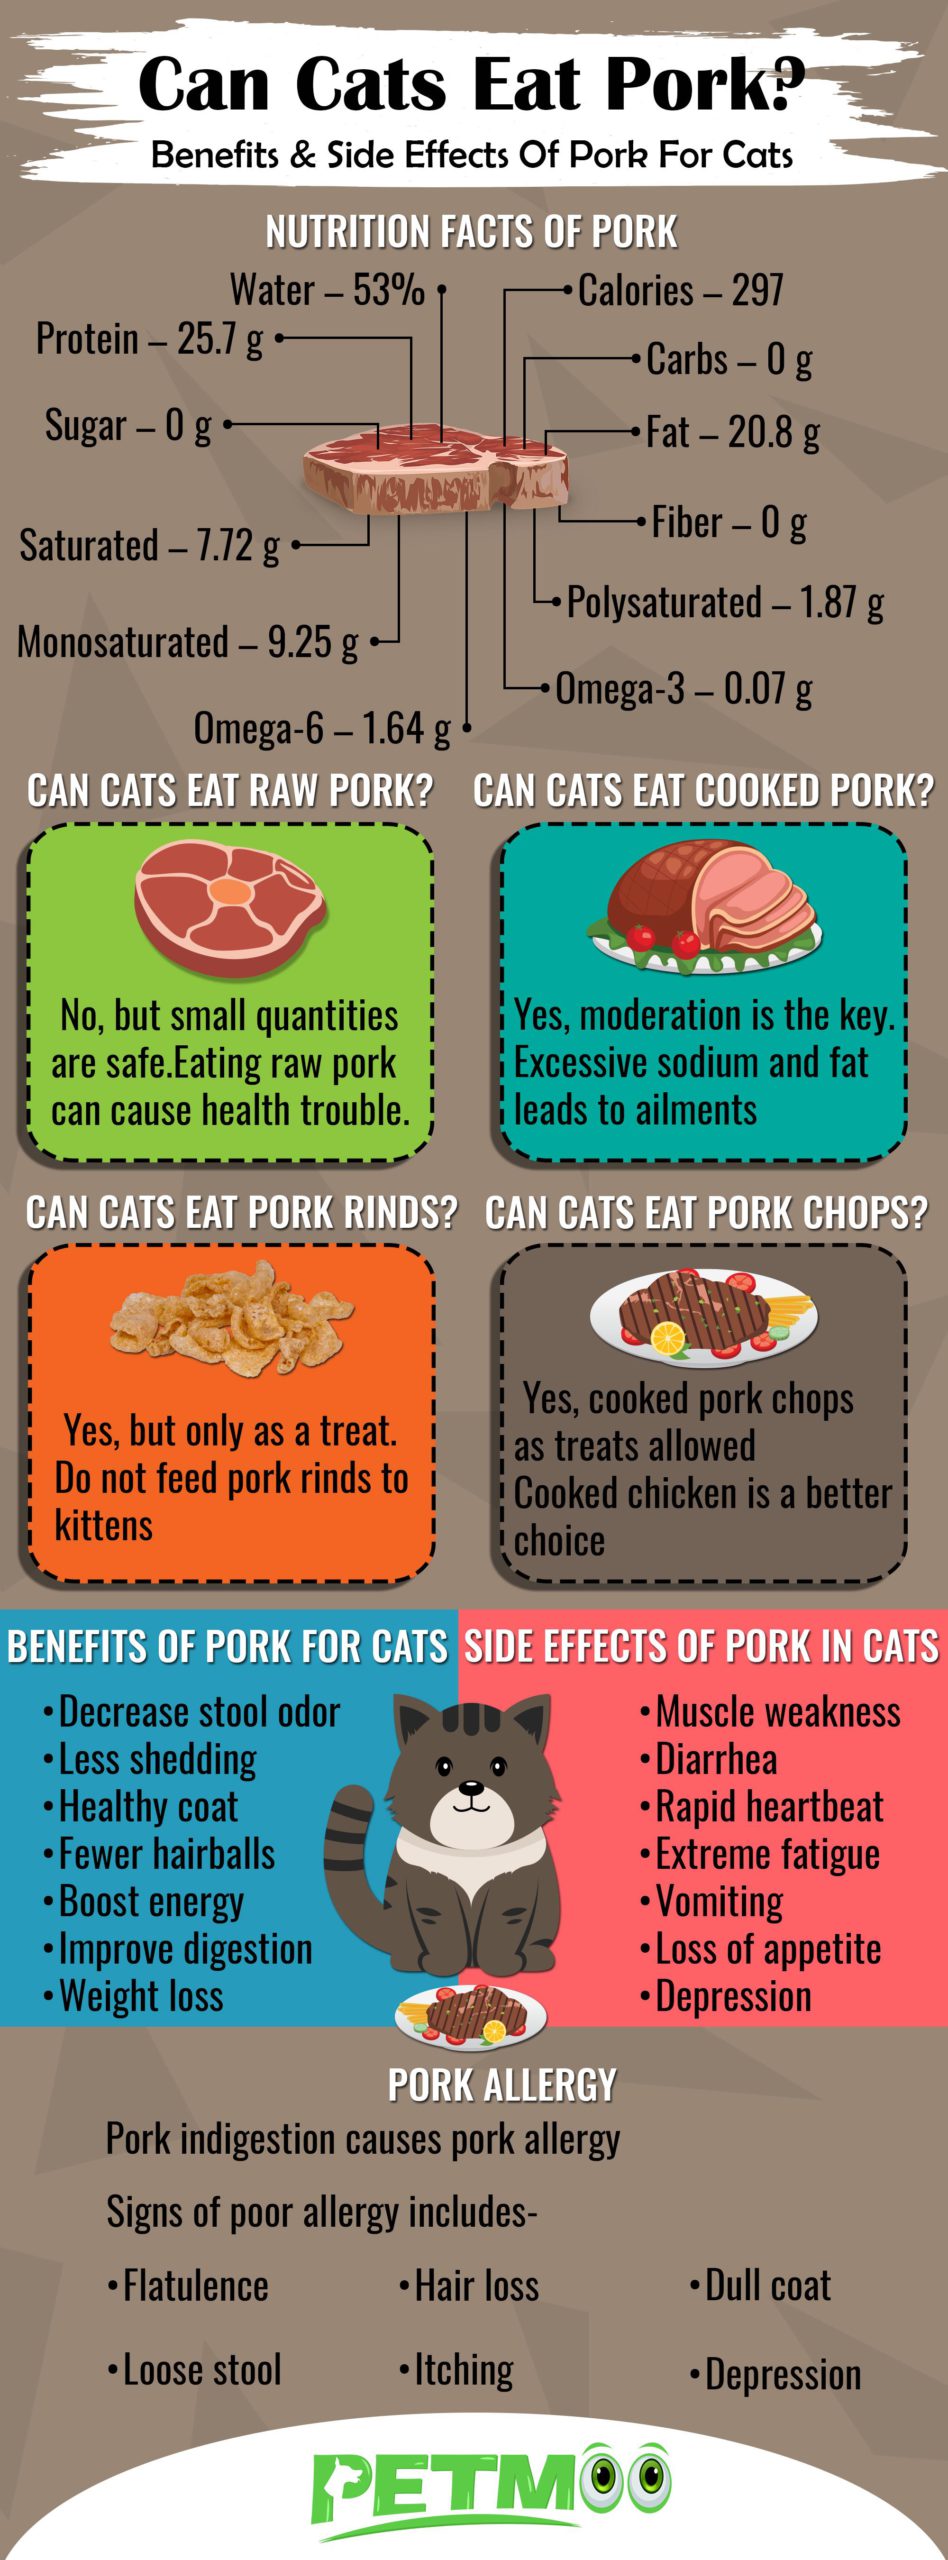 Do cats eat pork